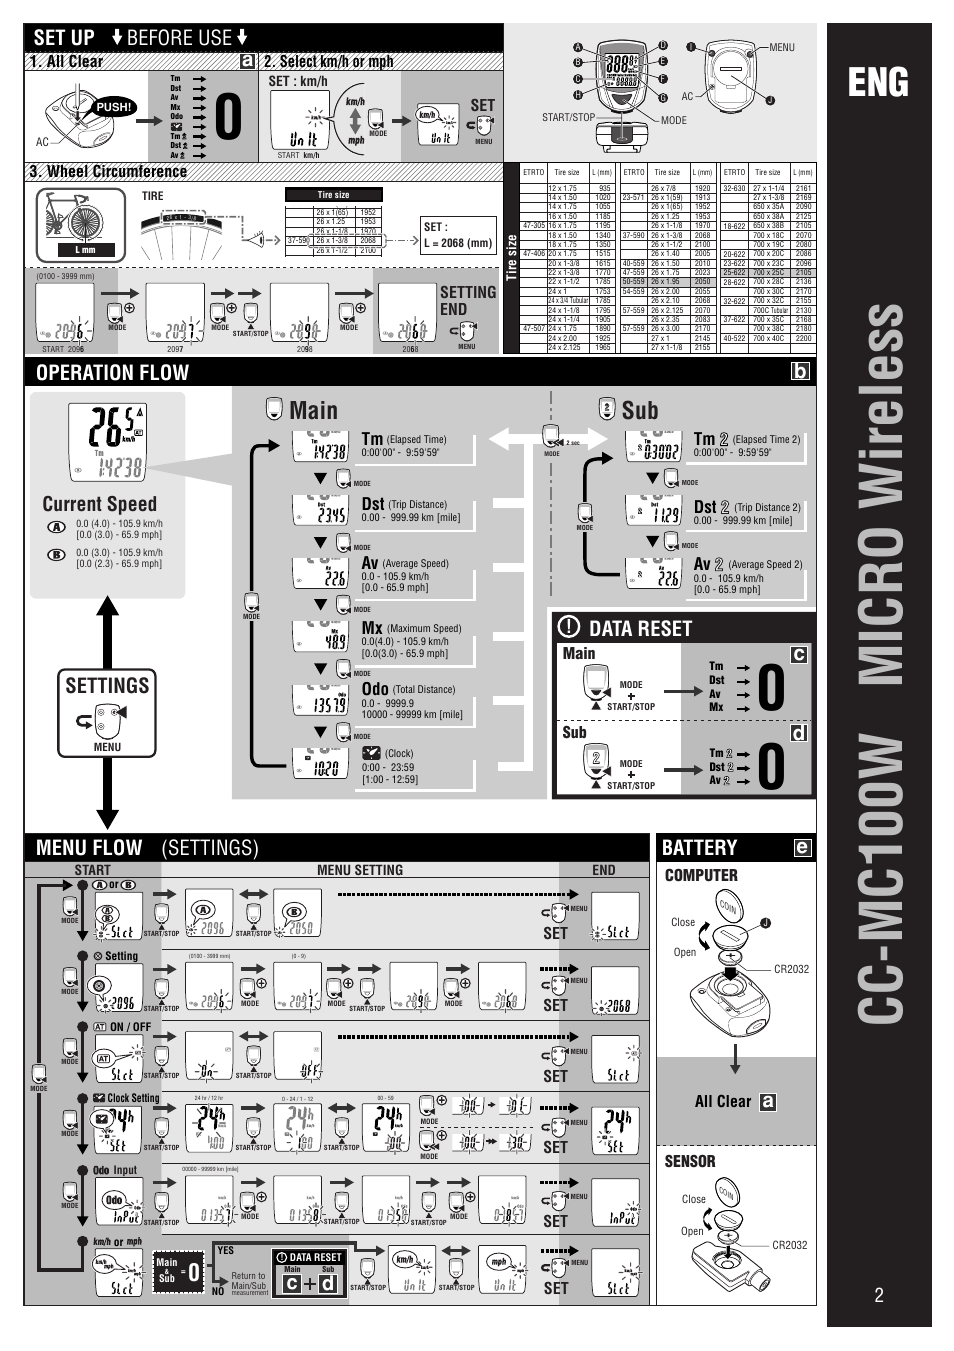 CC-MC100W MANUAL PDF